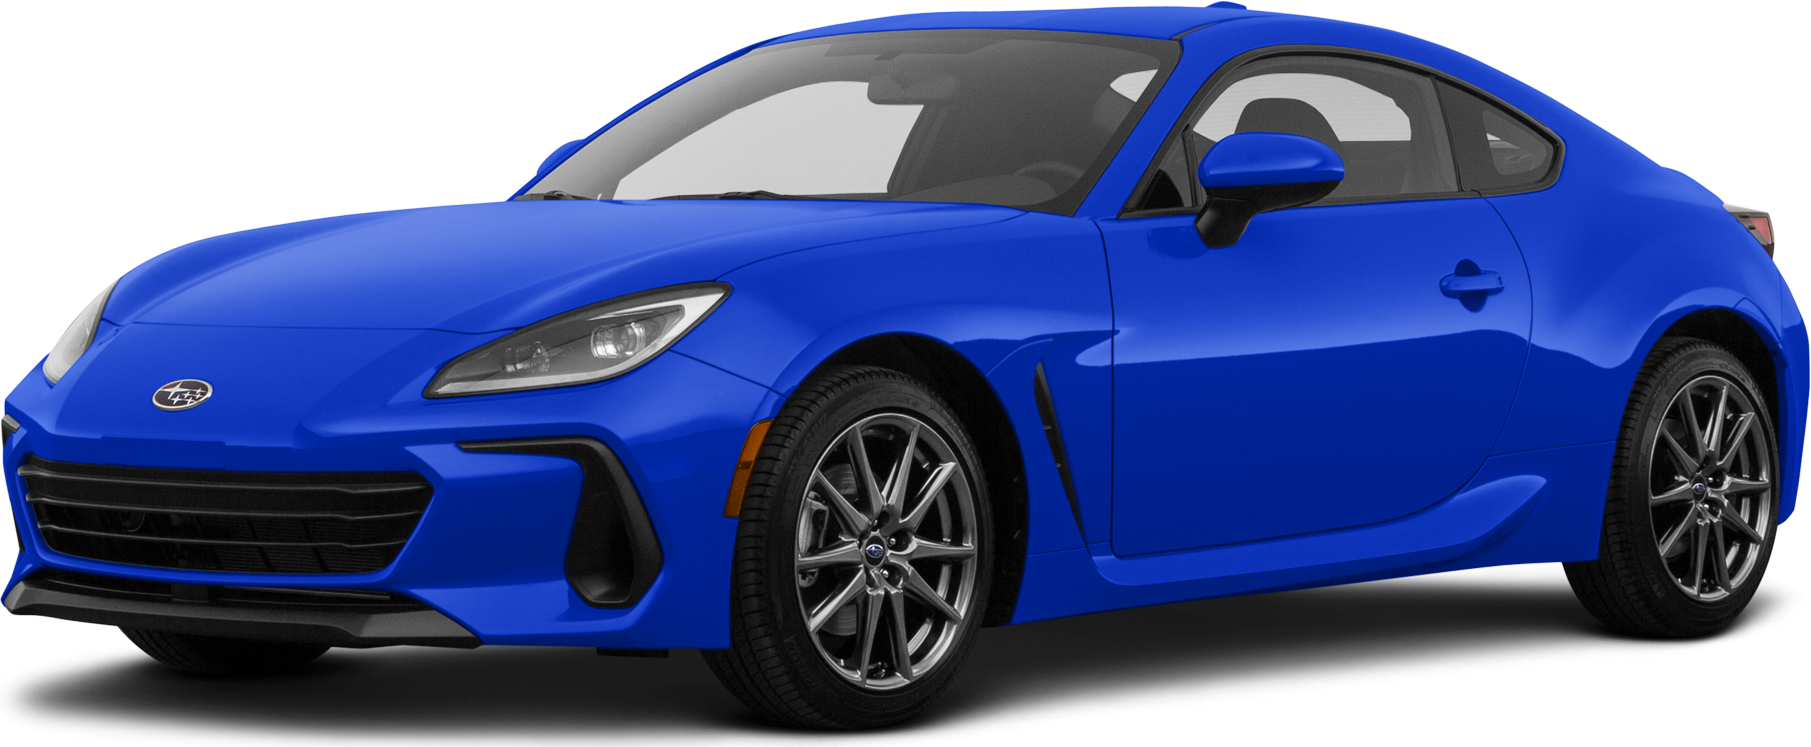 2022 Subaru BRZ Price, Value, Ratings & Reviews